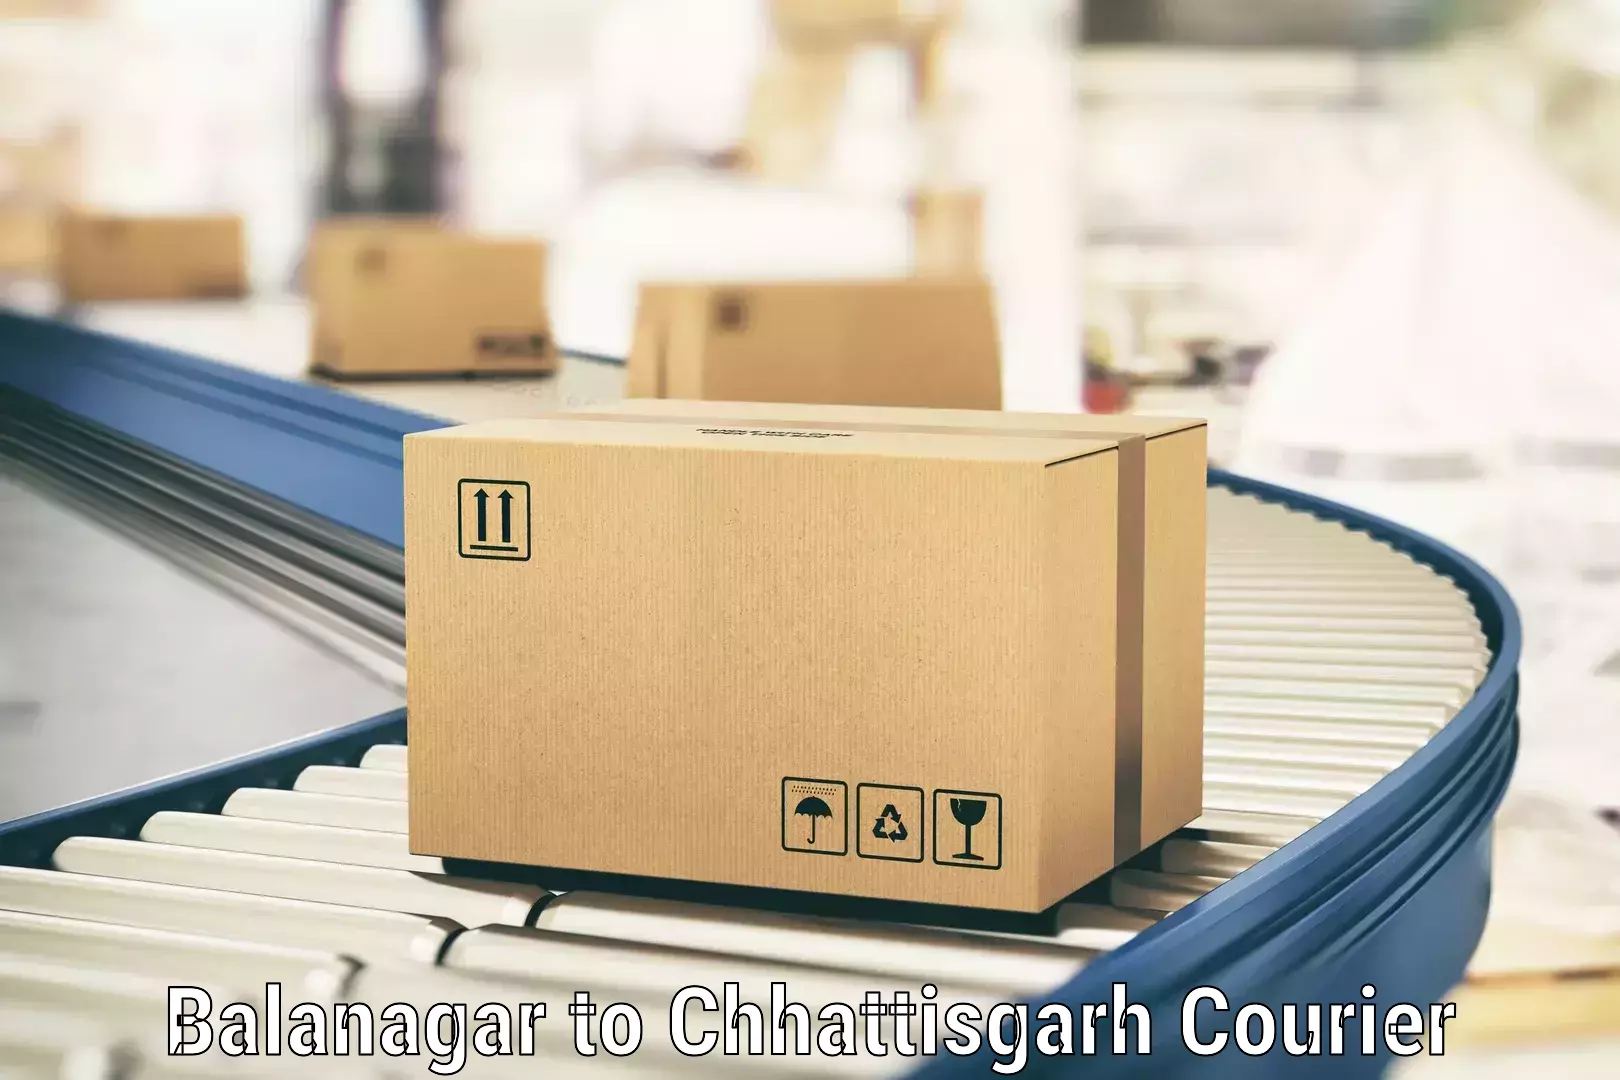 Reliable courier services Balanagar to Raigarh Chhattisgarh